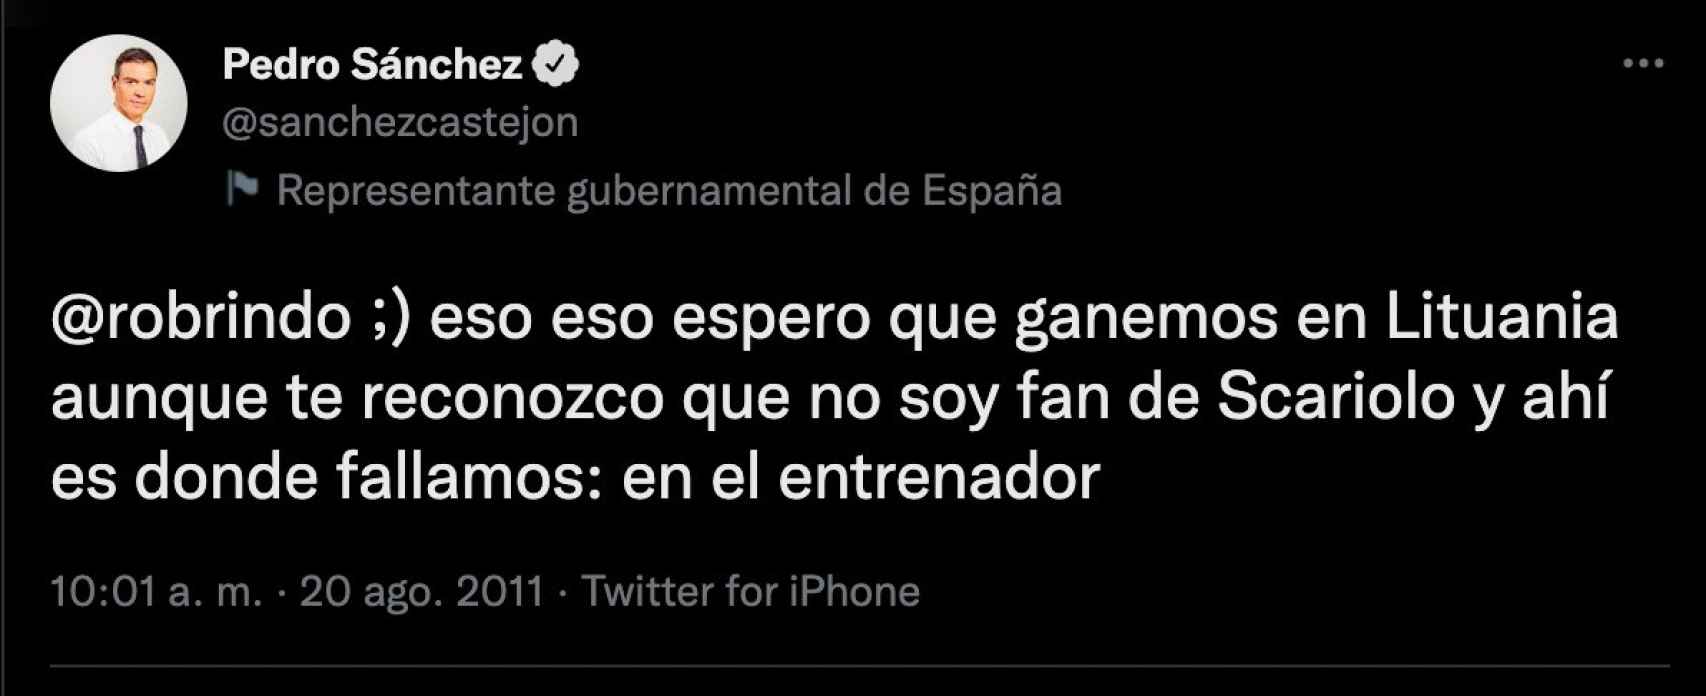 La publicación de Pedro Sánchez en Twitter sobre Sergio Scariolo en 2011 antes de comenzar el torneo.